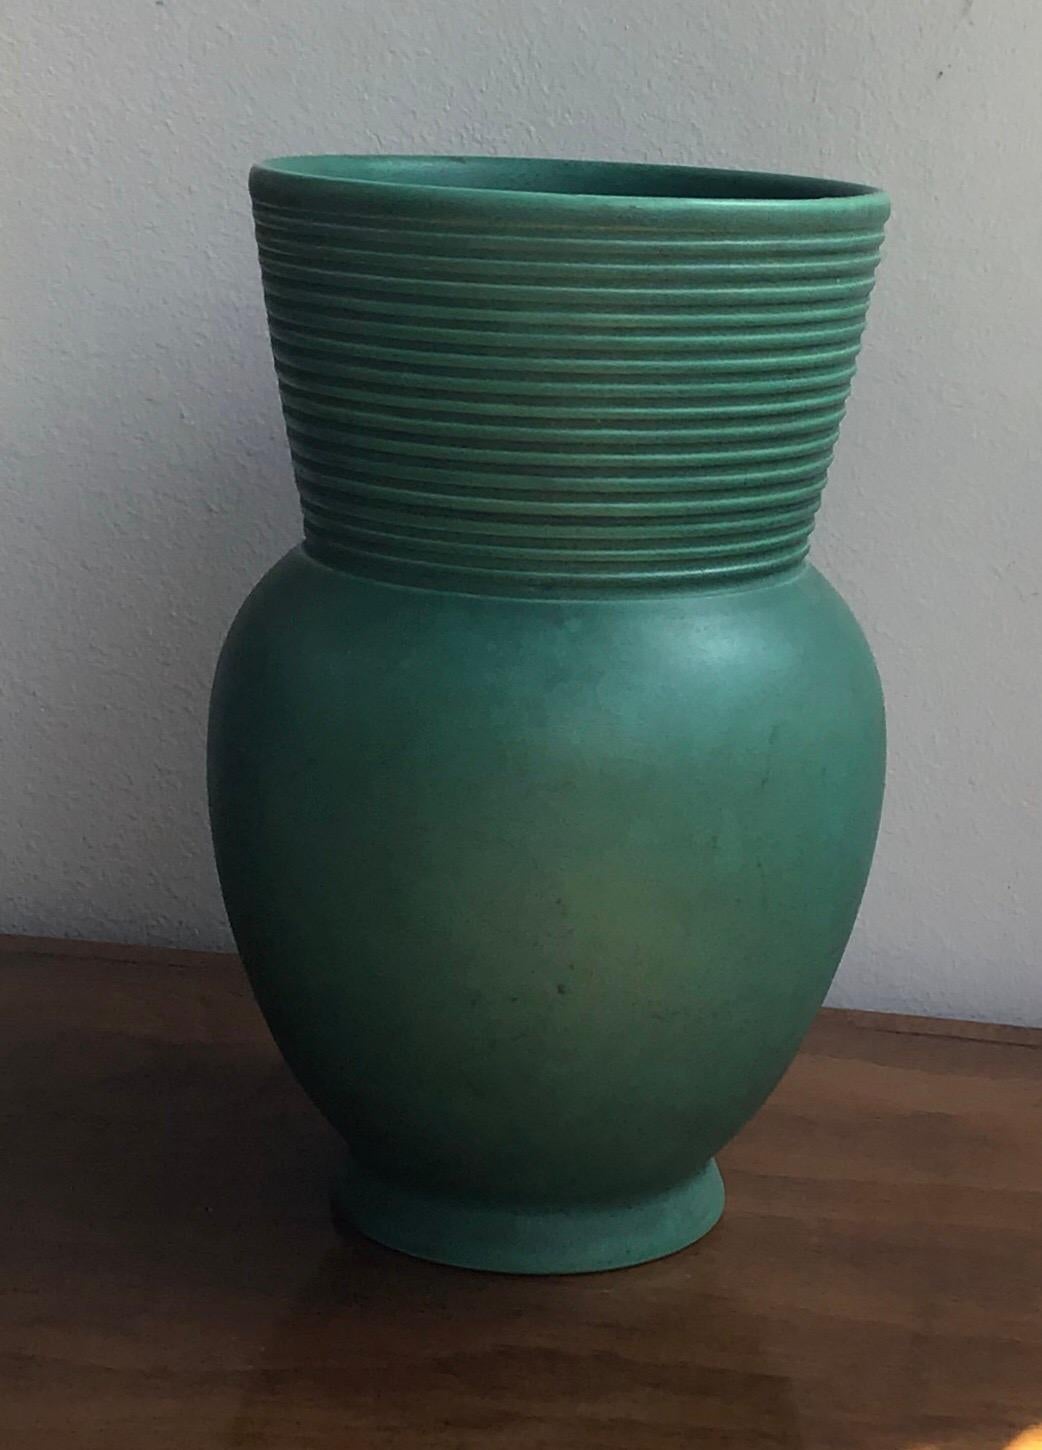 Richard Ginori Giovanni Gariboldi Vase Green Ceramic 1950 Italy 3